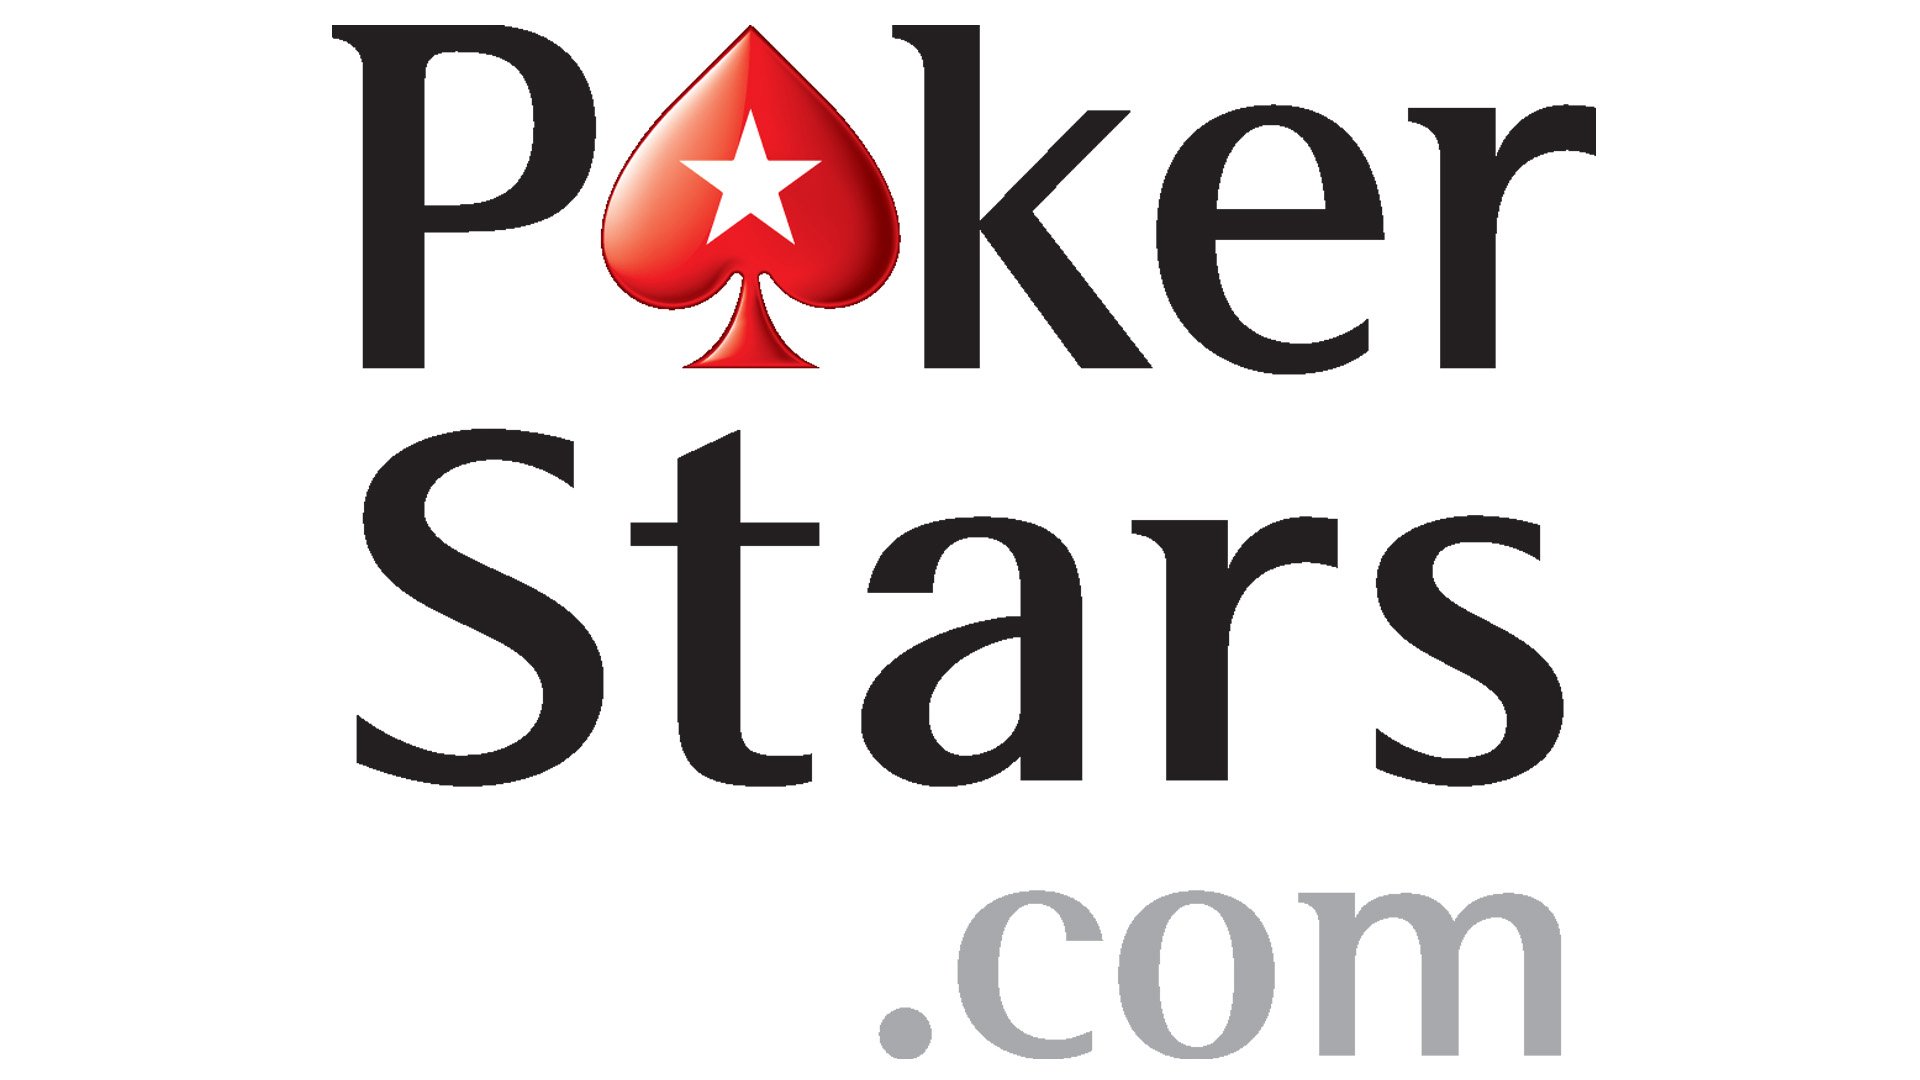 Poker stars com. Эмблема покерстарс. Покер Stars. Покер старс логотип вектор. Покер страс компания логотип.